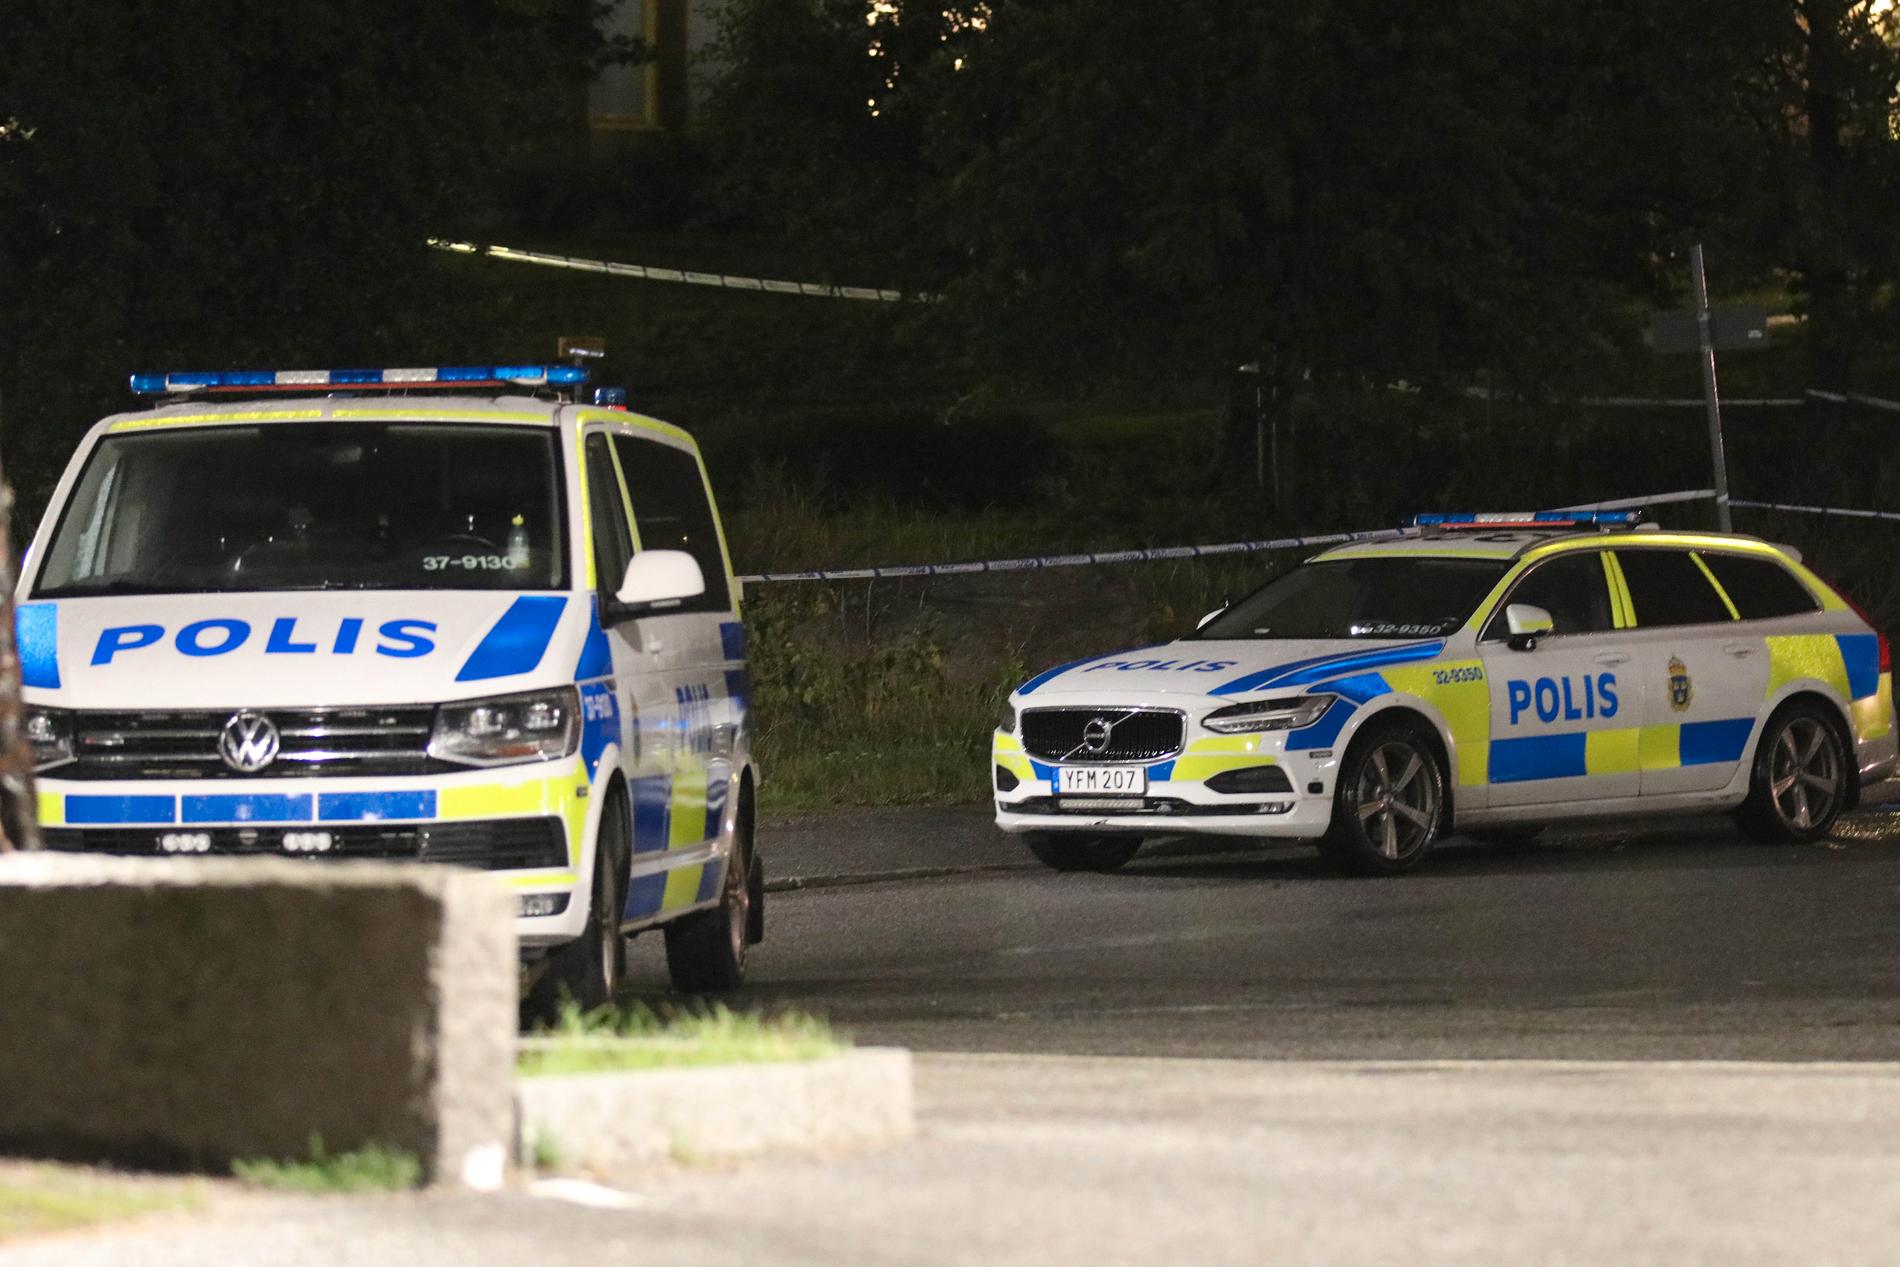 Polis på plats efter knivskärning i Orminge.